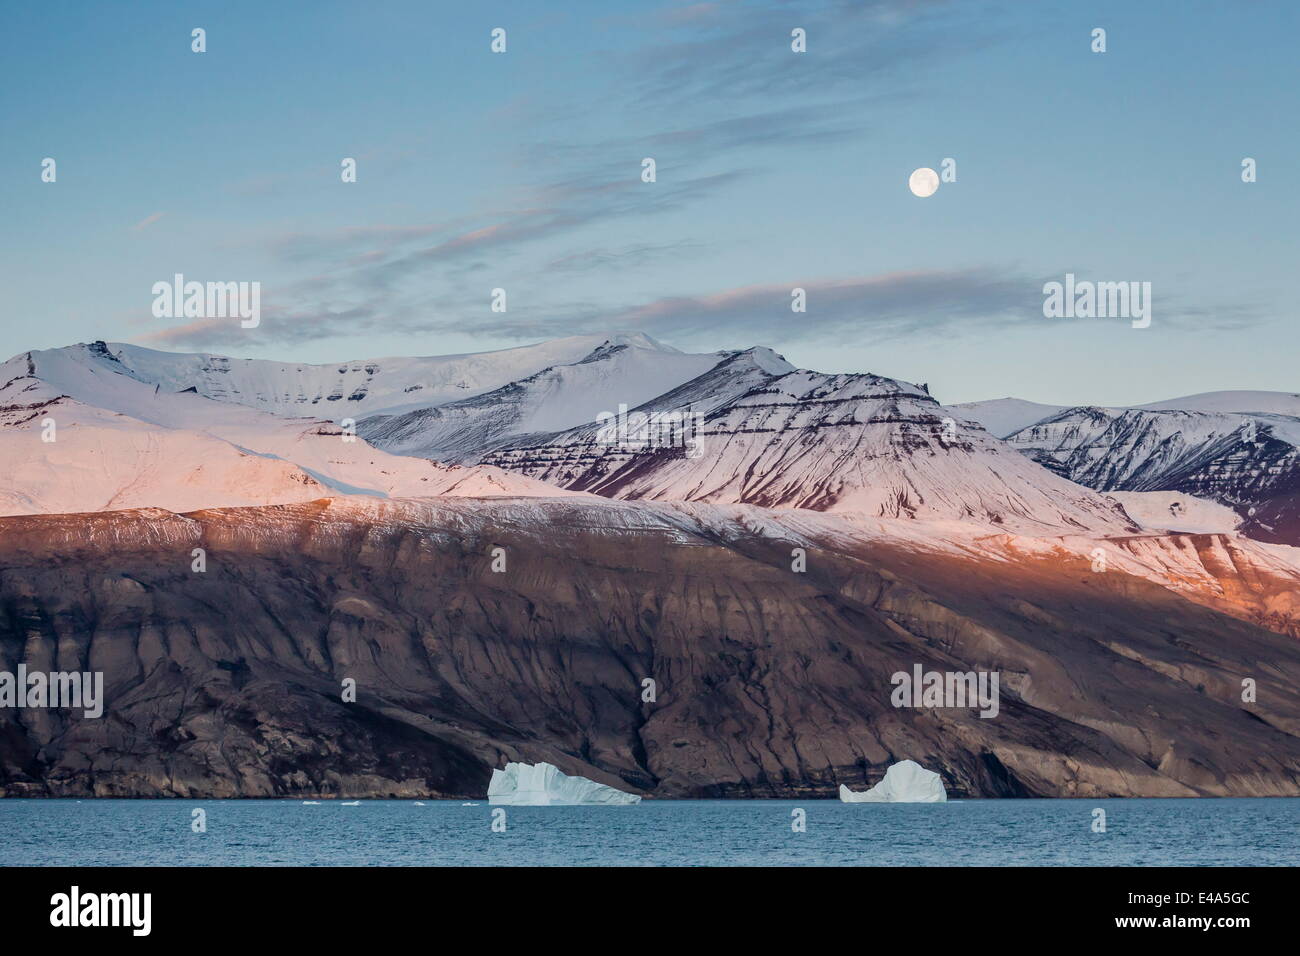 Luna quasi piena impostazione nelle prime ore del mattino nei pressi di Qilakitsoq, Groenlandia, regioni polari Foto Stock